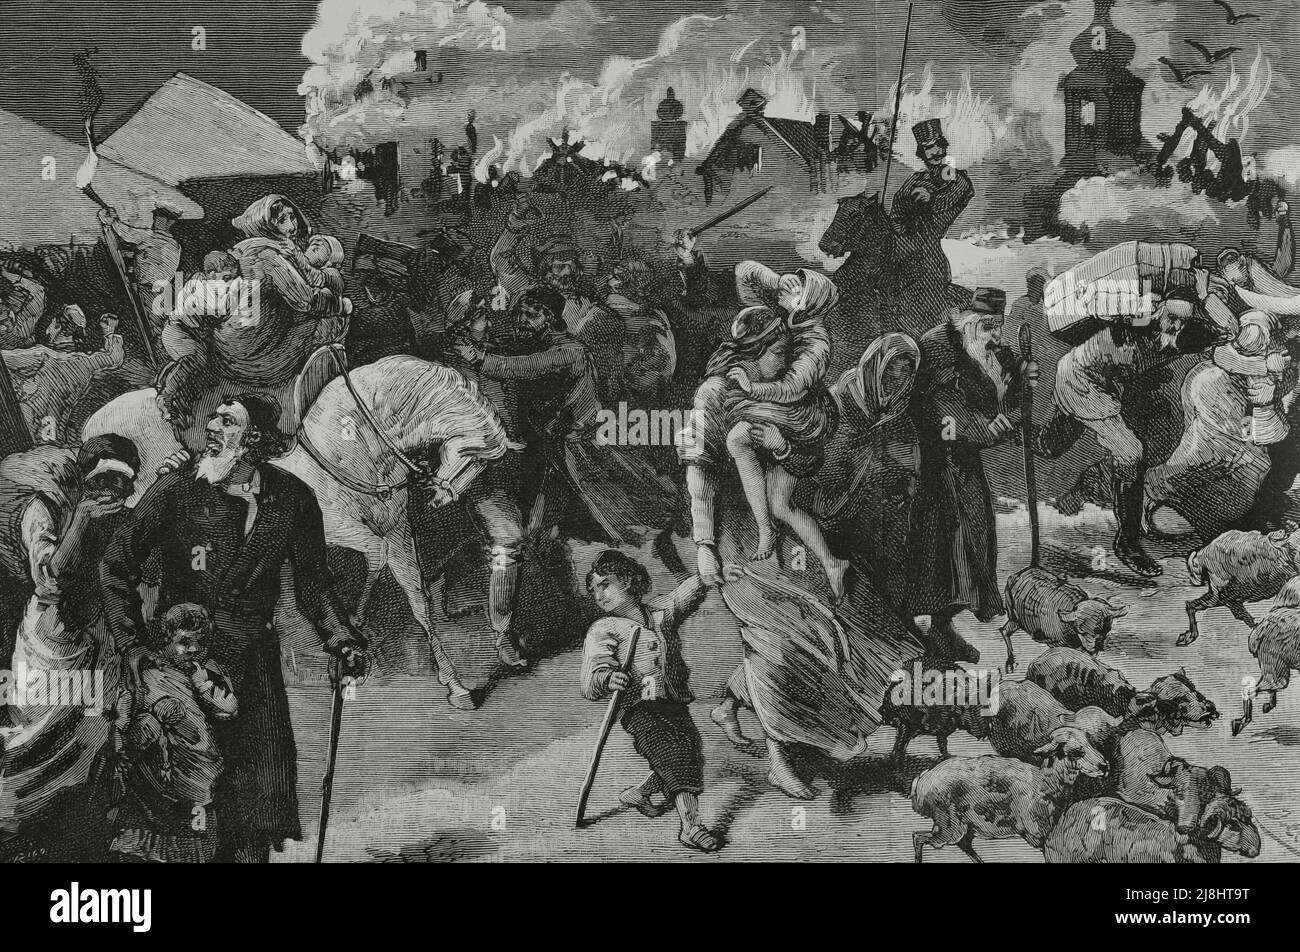 Russisches Reich. Antisemitische Bewegung. Vertreibung der Juden in einem podolischen Dorf. Stich von Rico, 1882. Stockfoto